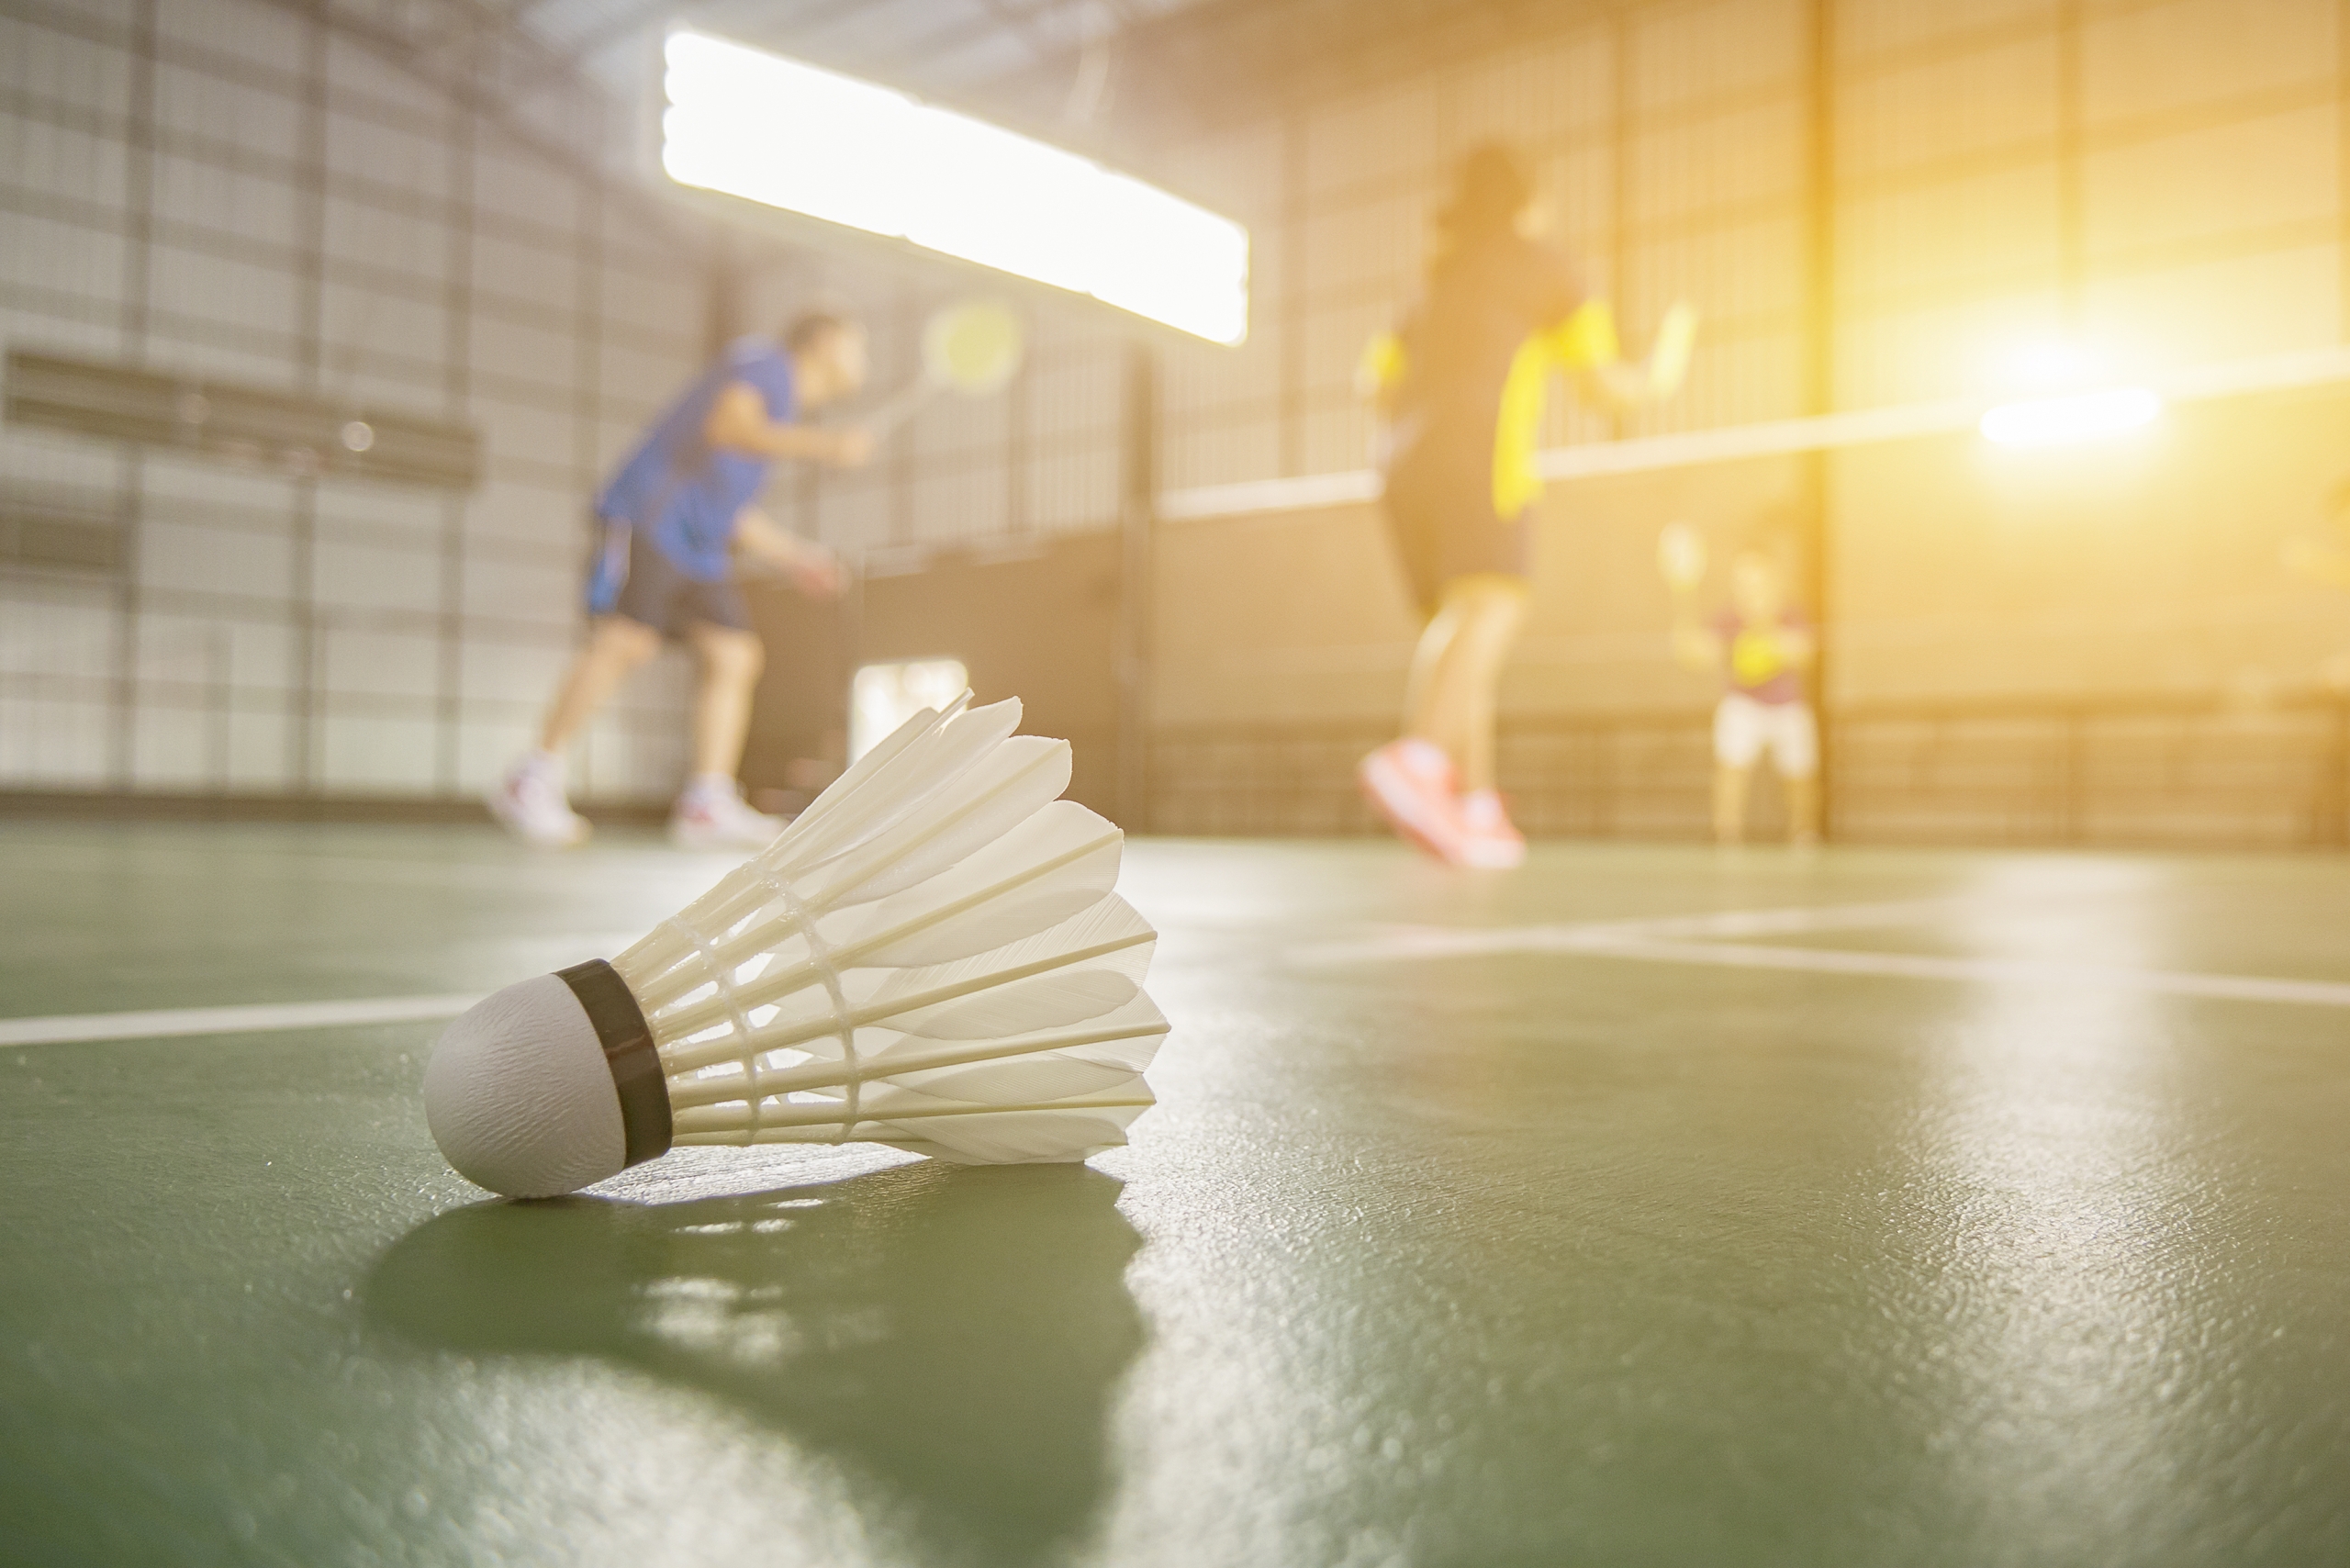 sportzaal met badminton shuttle op de vloer